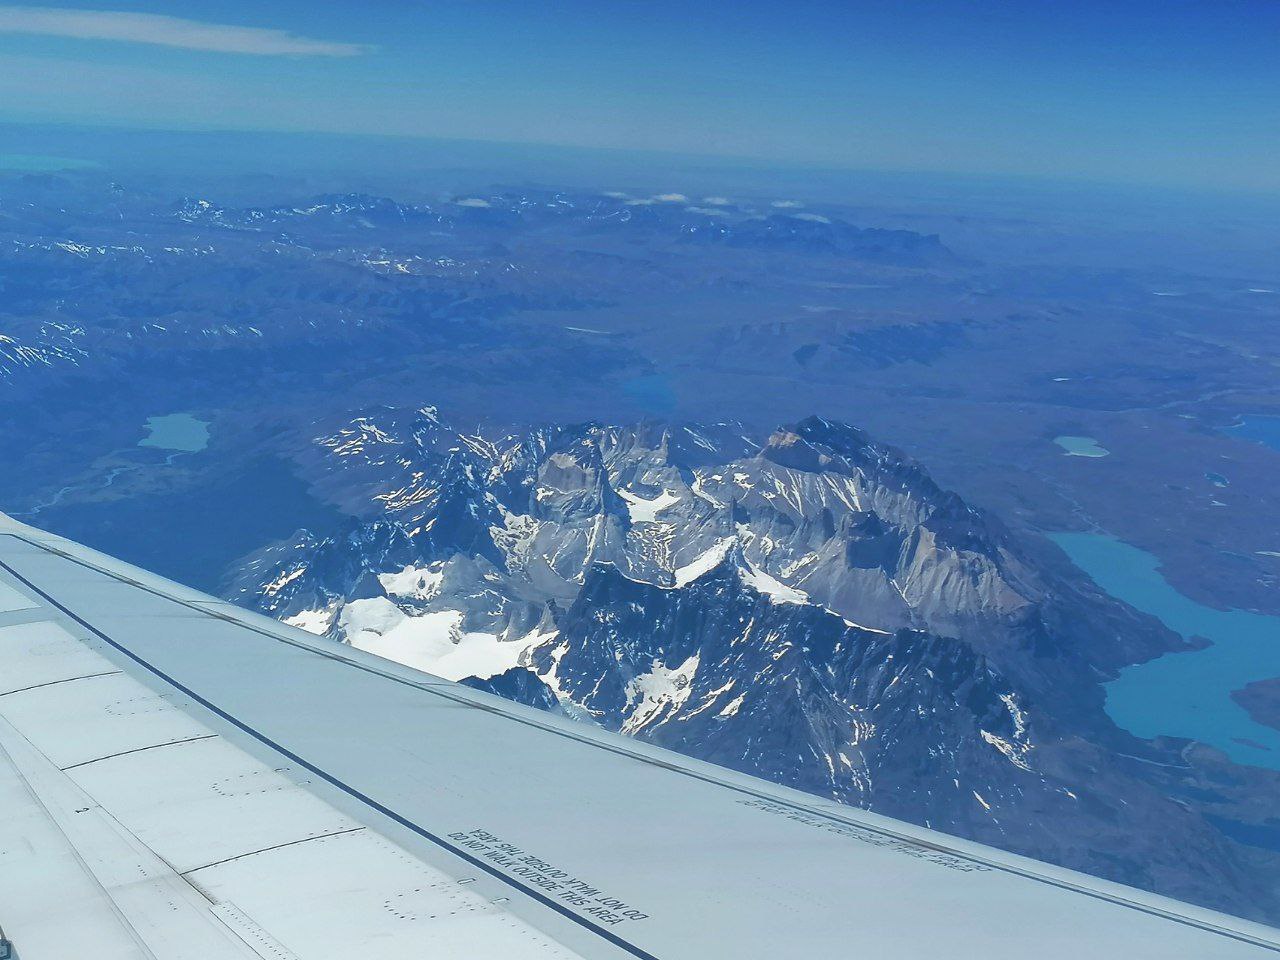 volo-panorama-aereo-ghiacciai-neve-montagne